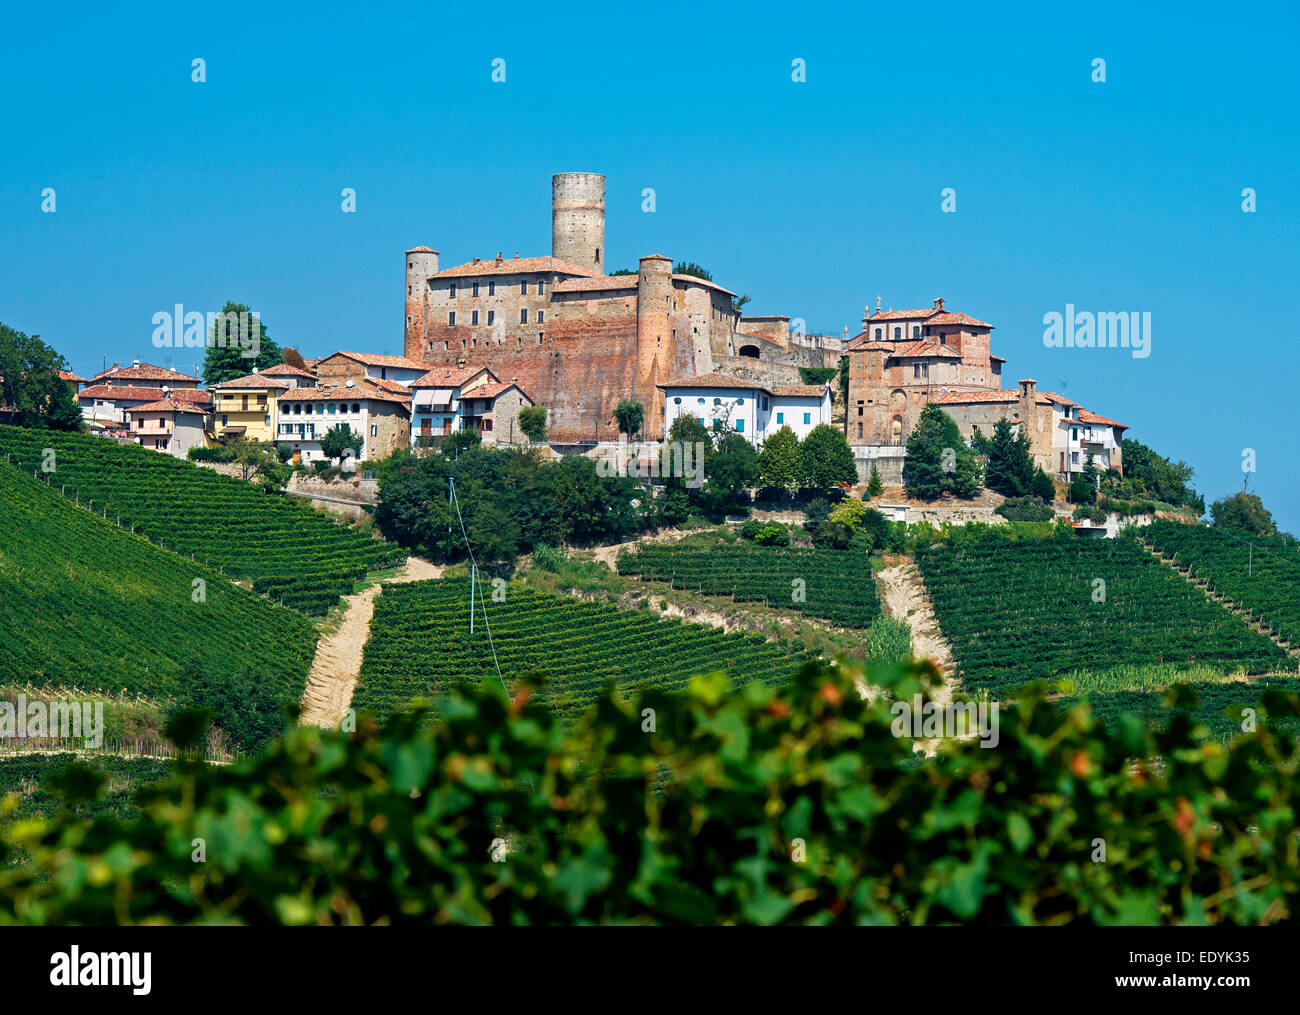 Il castello di Castiglione Falletto, vigneti, Castiglione Falletto, in provincia di Cuneo, Piemonte, Italia Foto Stock